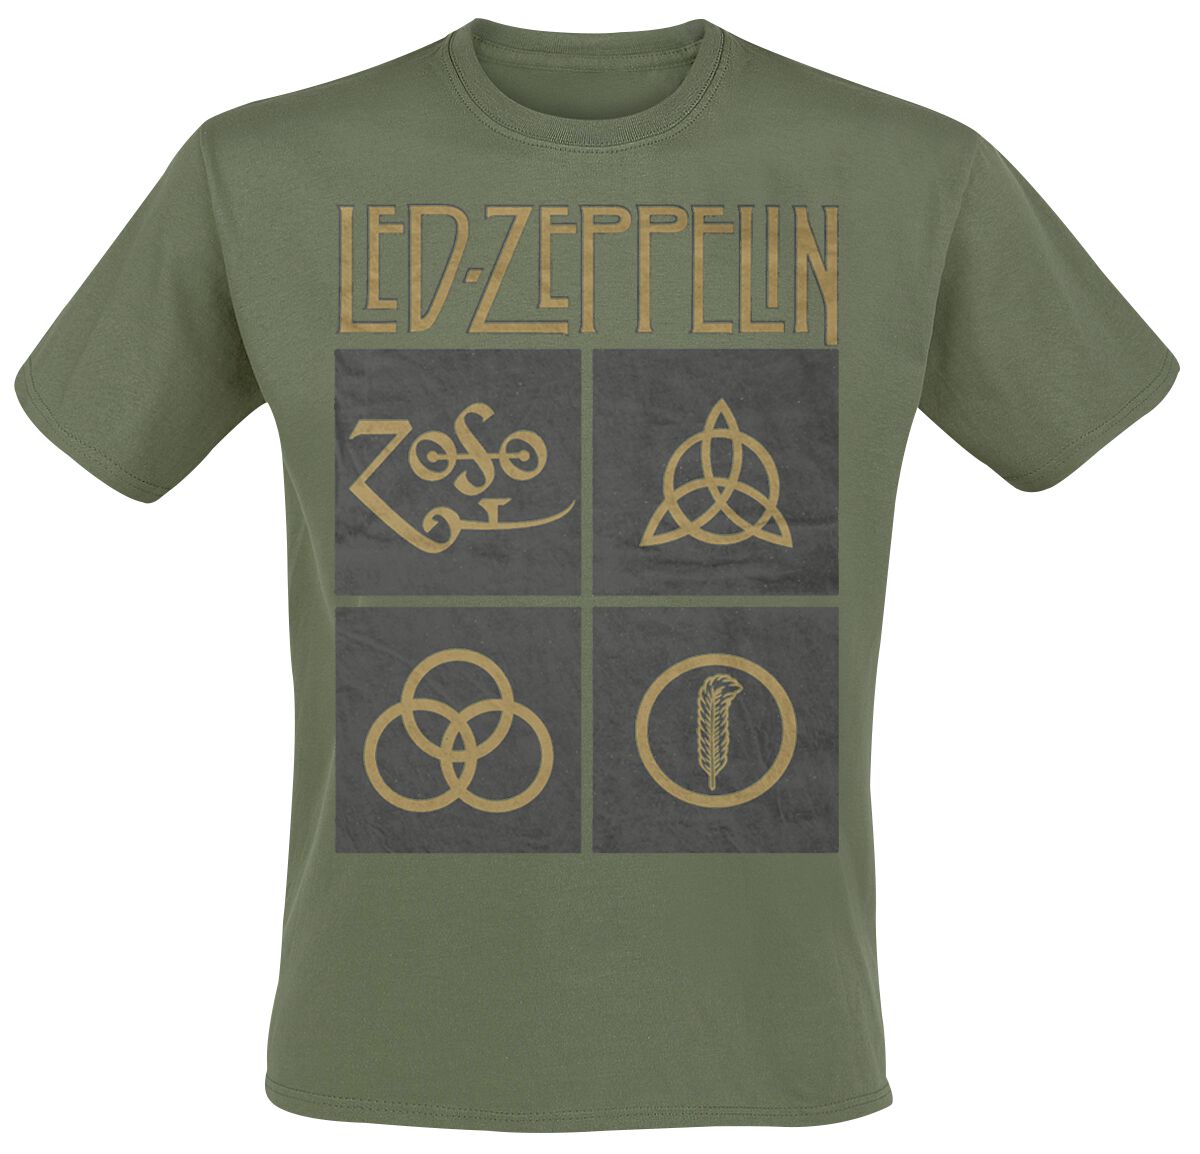 Led Zeppelin T-Shirt - Green Symbols - XL bis XXL - für Männer - Größe XXL - oliv  - Lizenziertes Merchandise!